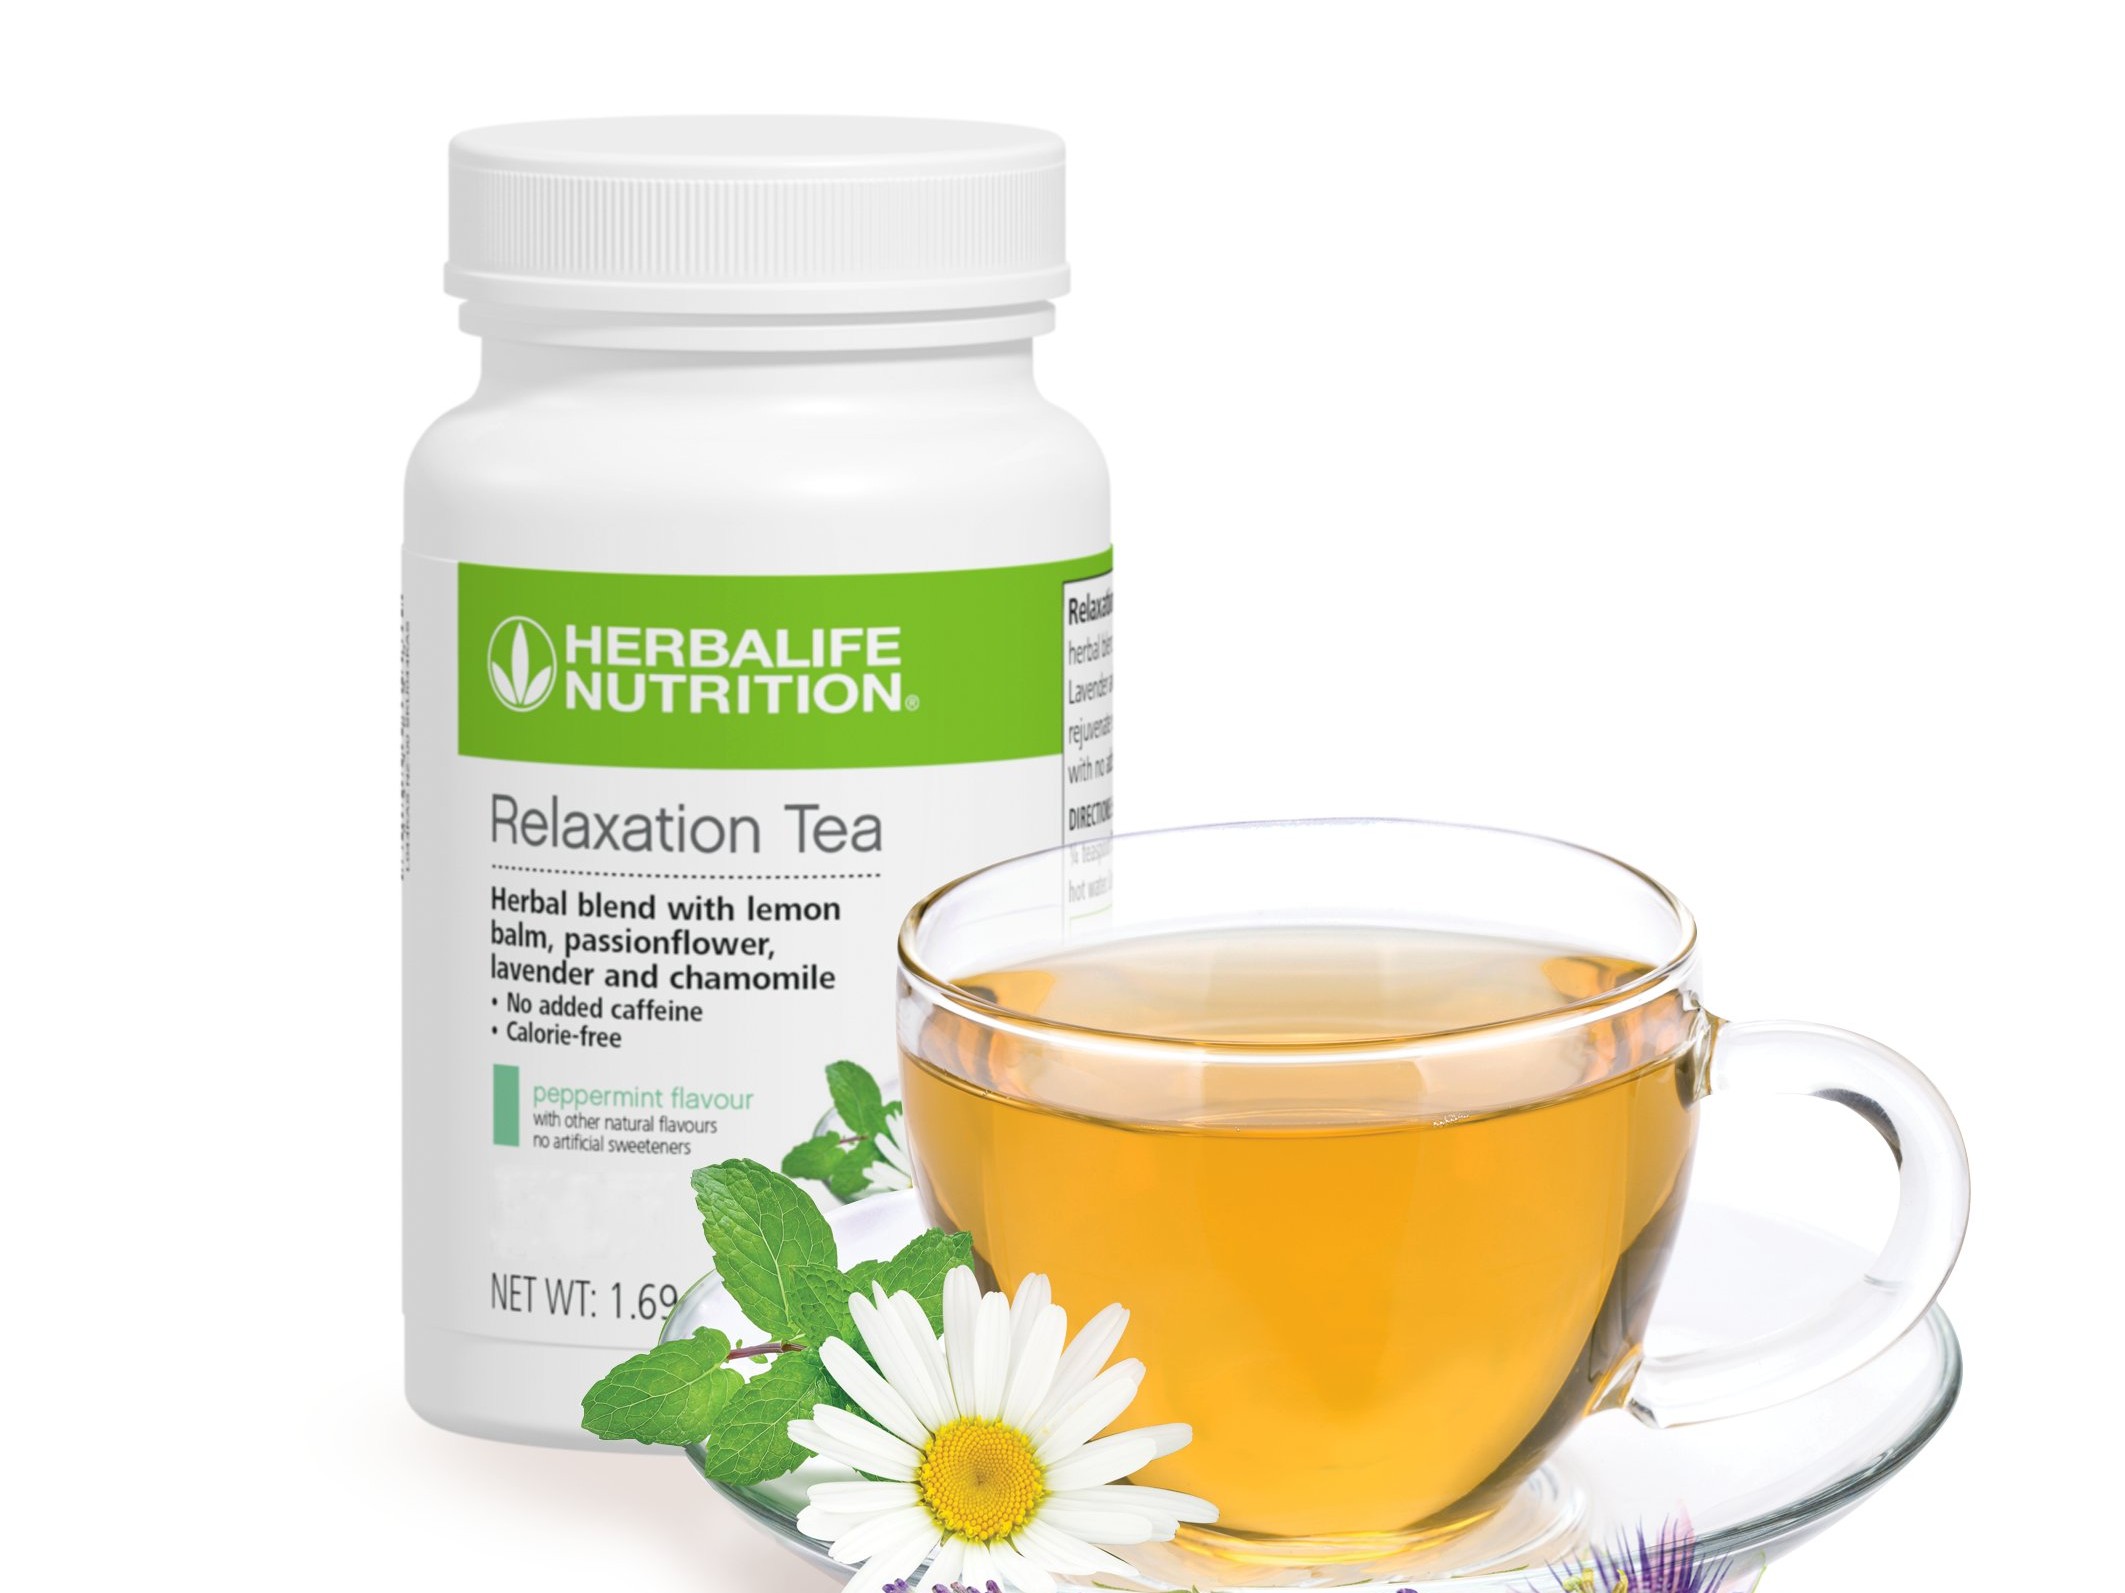 Herbalife Nutrition giới thiệu và chào bán Trà thư giãn mới với thành phần thảo dược giúp chống lại stress